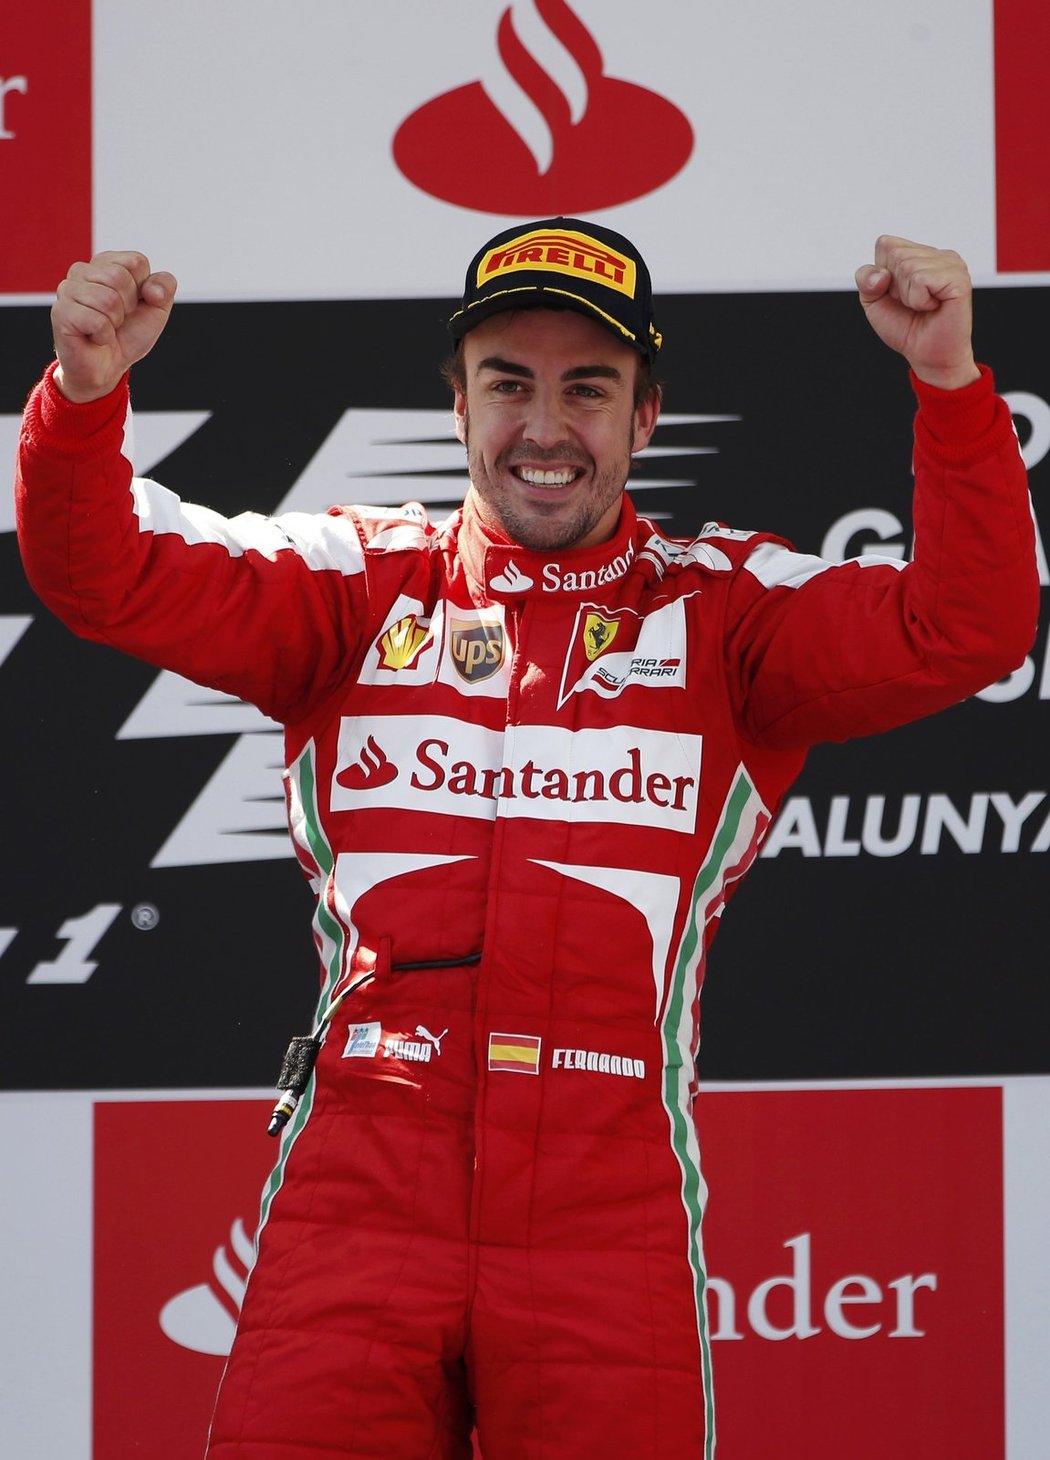 Po dnešku opět vím, že mám auto, s nímž mohu bojovat o titul mistra světa, prohlásil Alonso po vítězství v Barceloně